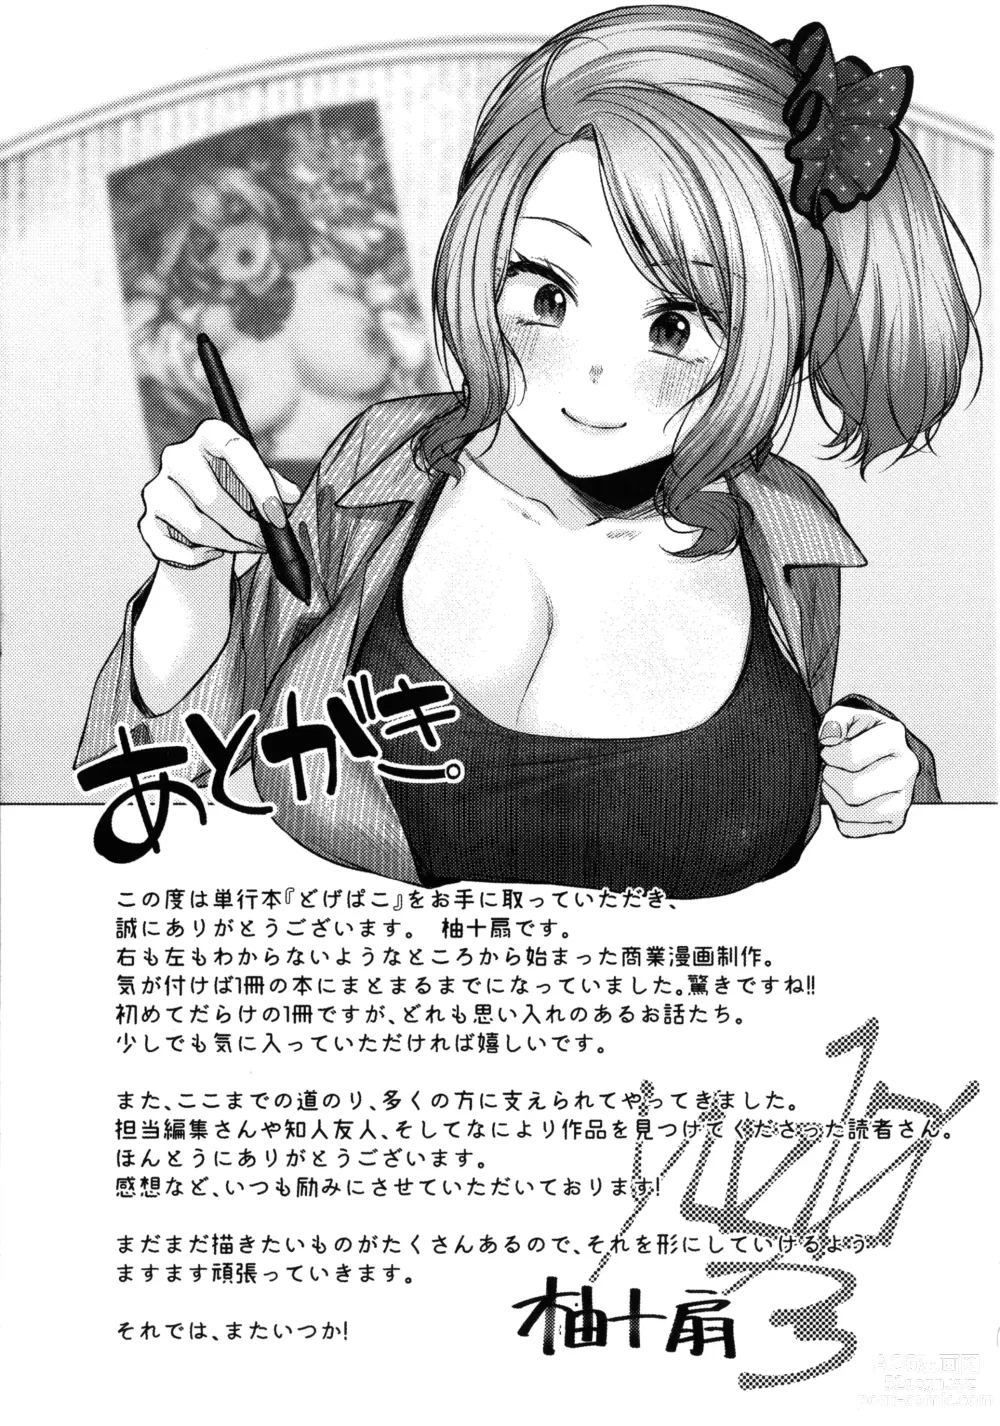 Page 213 of manga 도게파코 + 8P 소책자